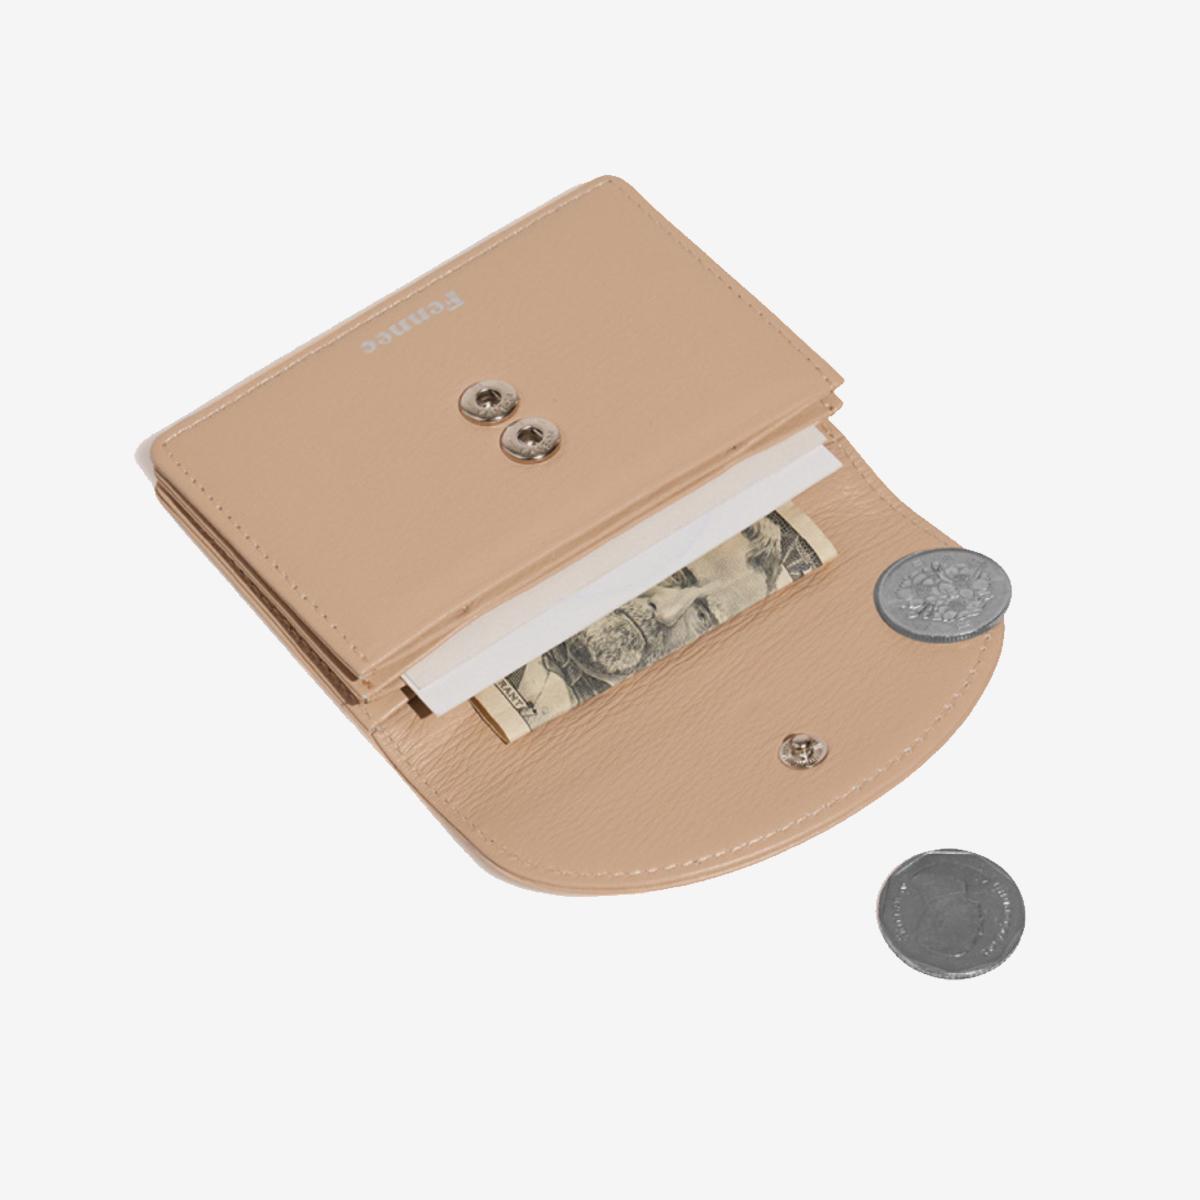 กระเป๋าใส่การ์ด Halfmoon Accordion Pocket สี Sand Beige